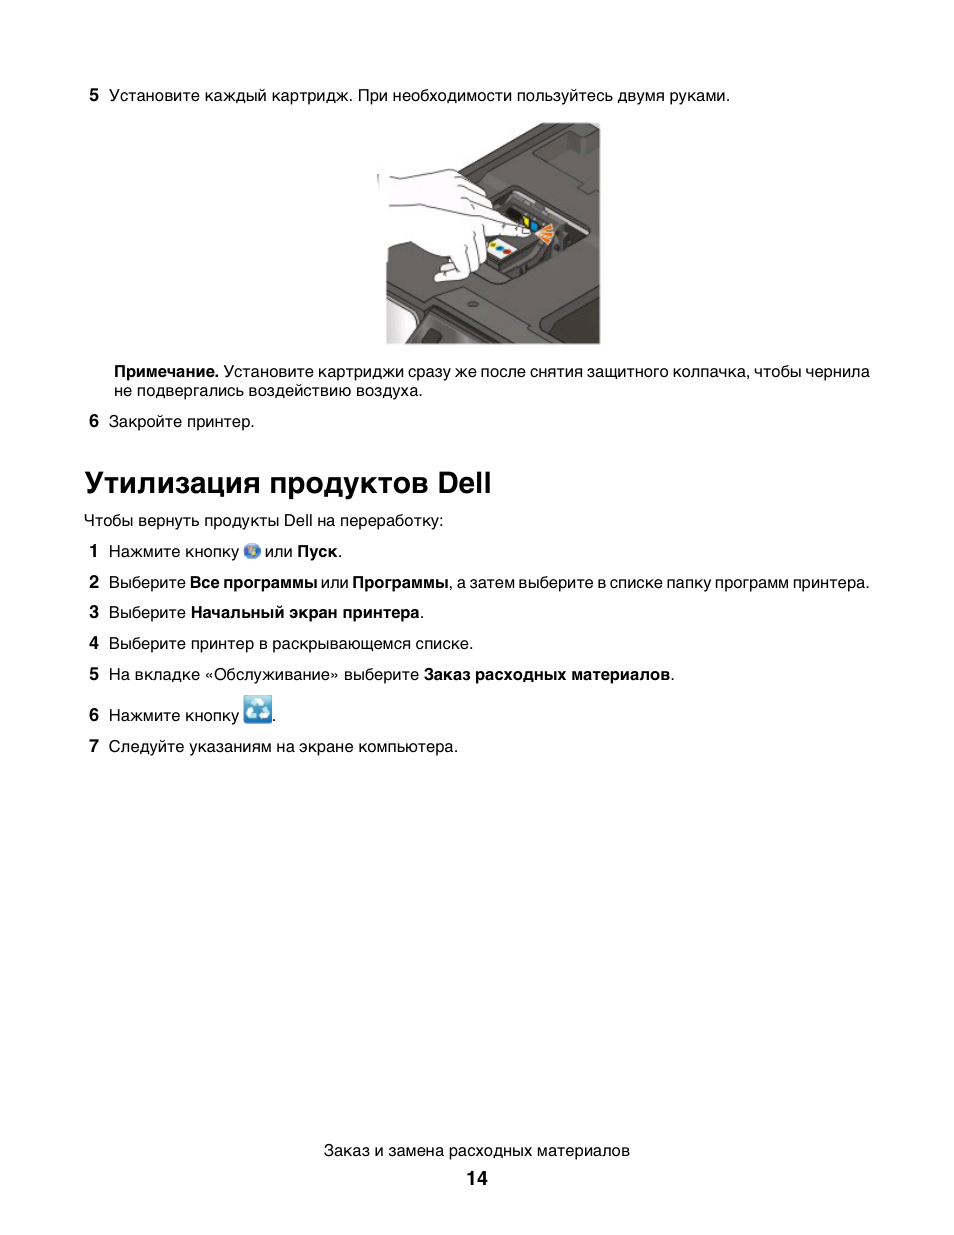 Утилизация продуктов dell | Инструкция по эксплуатации Dell P513w All In One Photo Printer | Страница 14 / 150